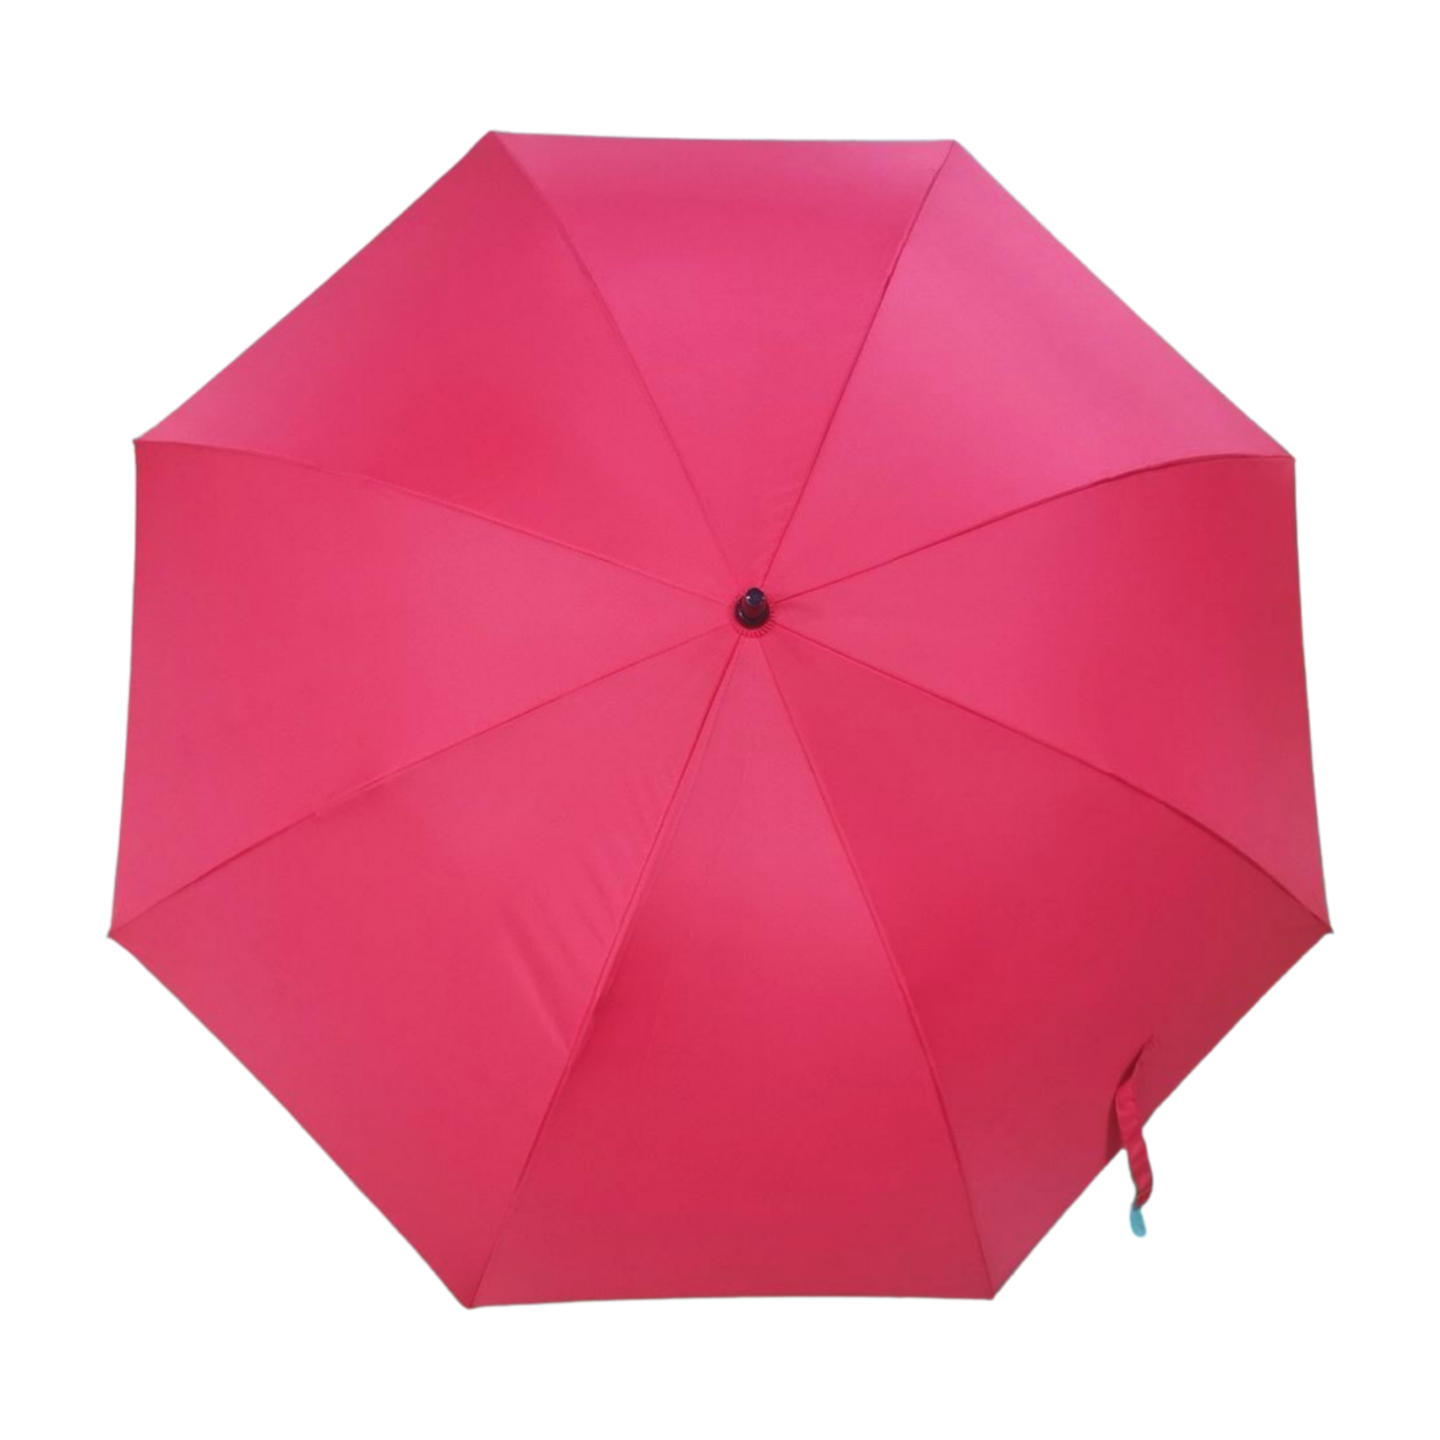 https://www.hodaumbrella.com/unique-golf-umbrella-product